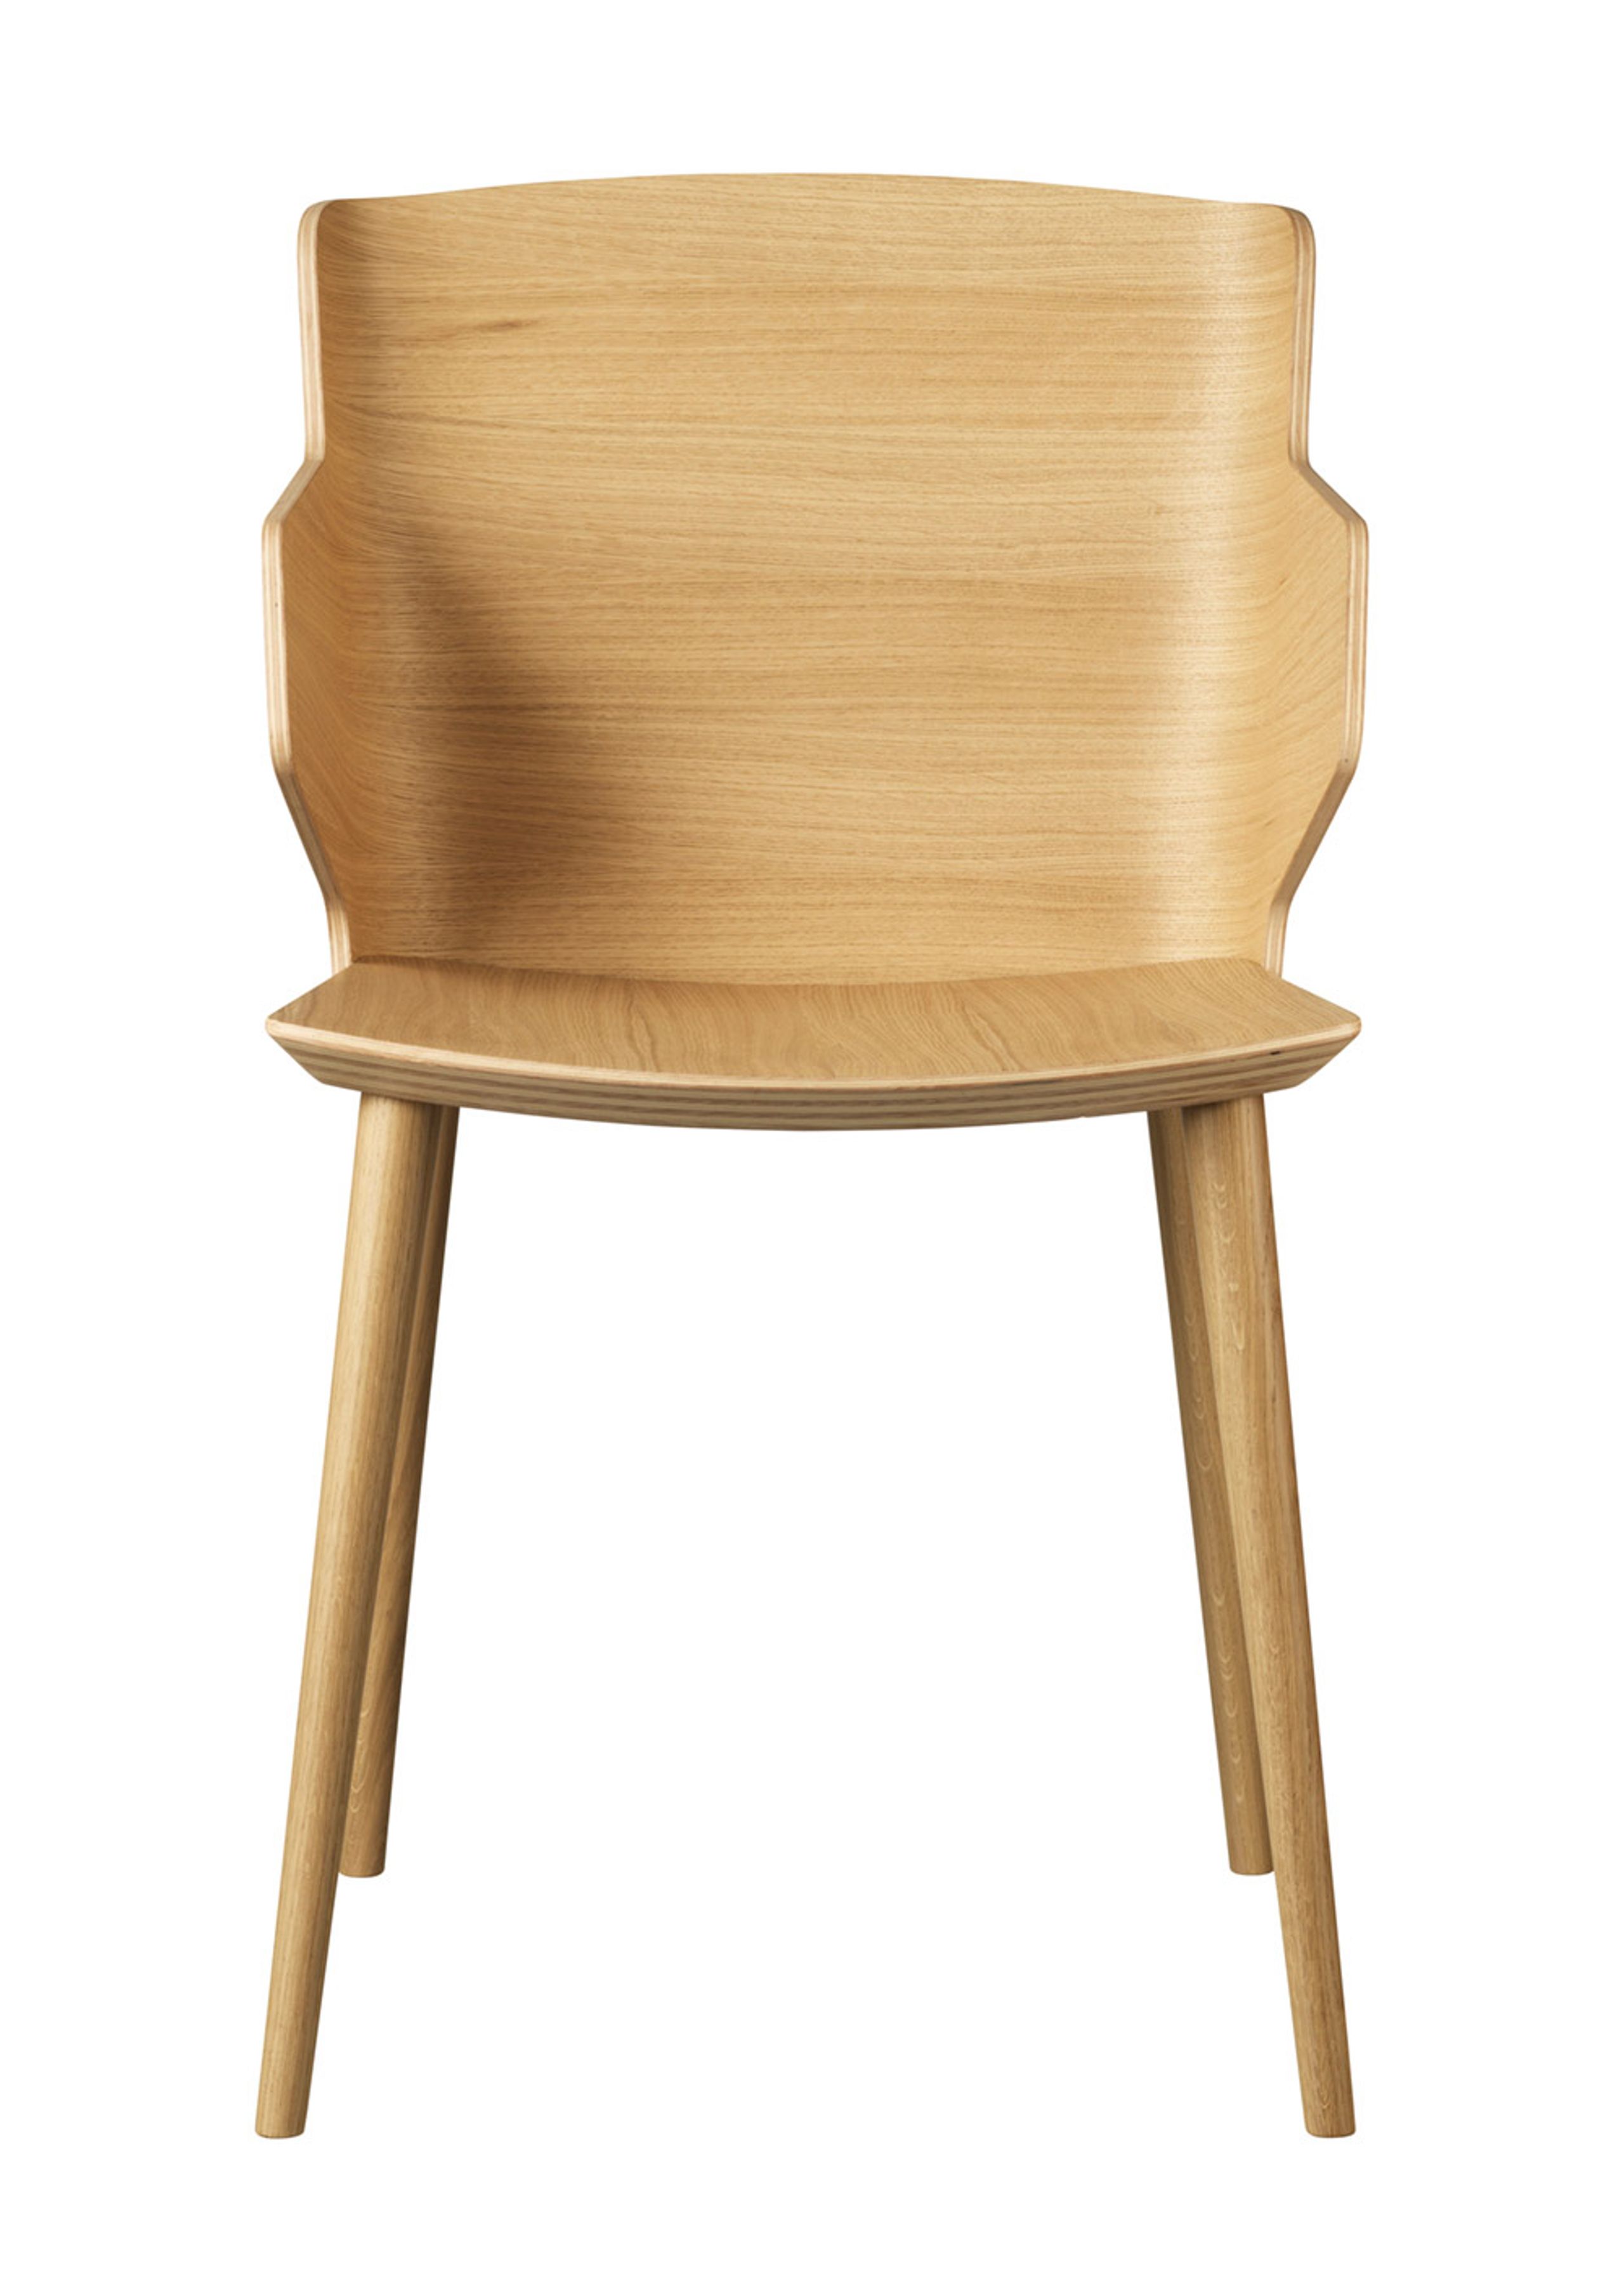 FDB Møbler / Furniture - Stoel - J155 Yak by Tom Stepp - Oak / Natural / With armrest